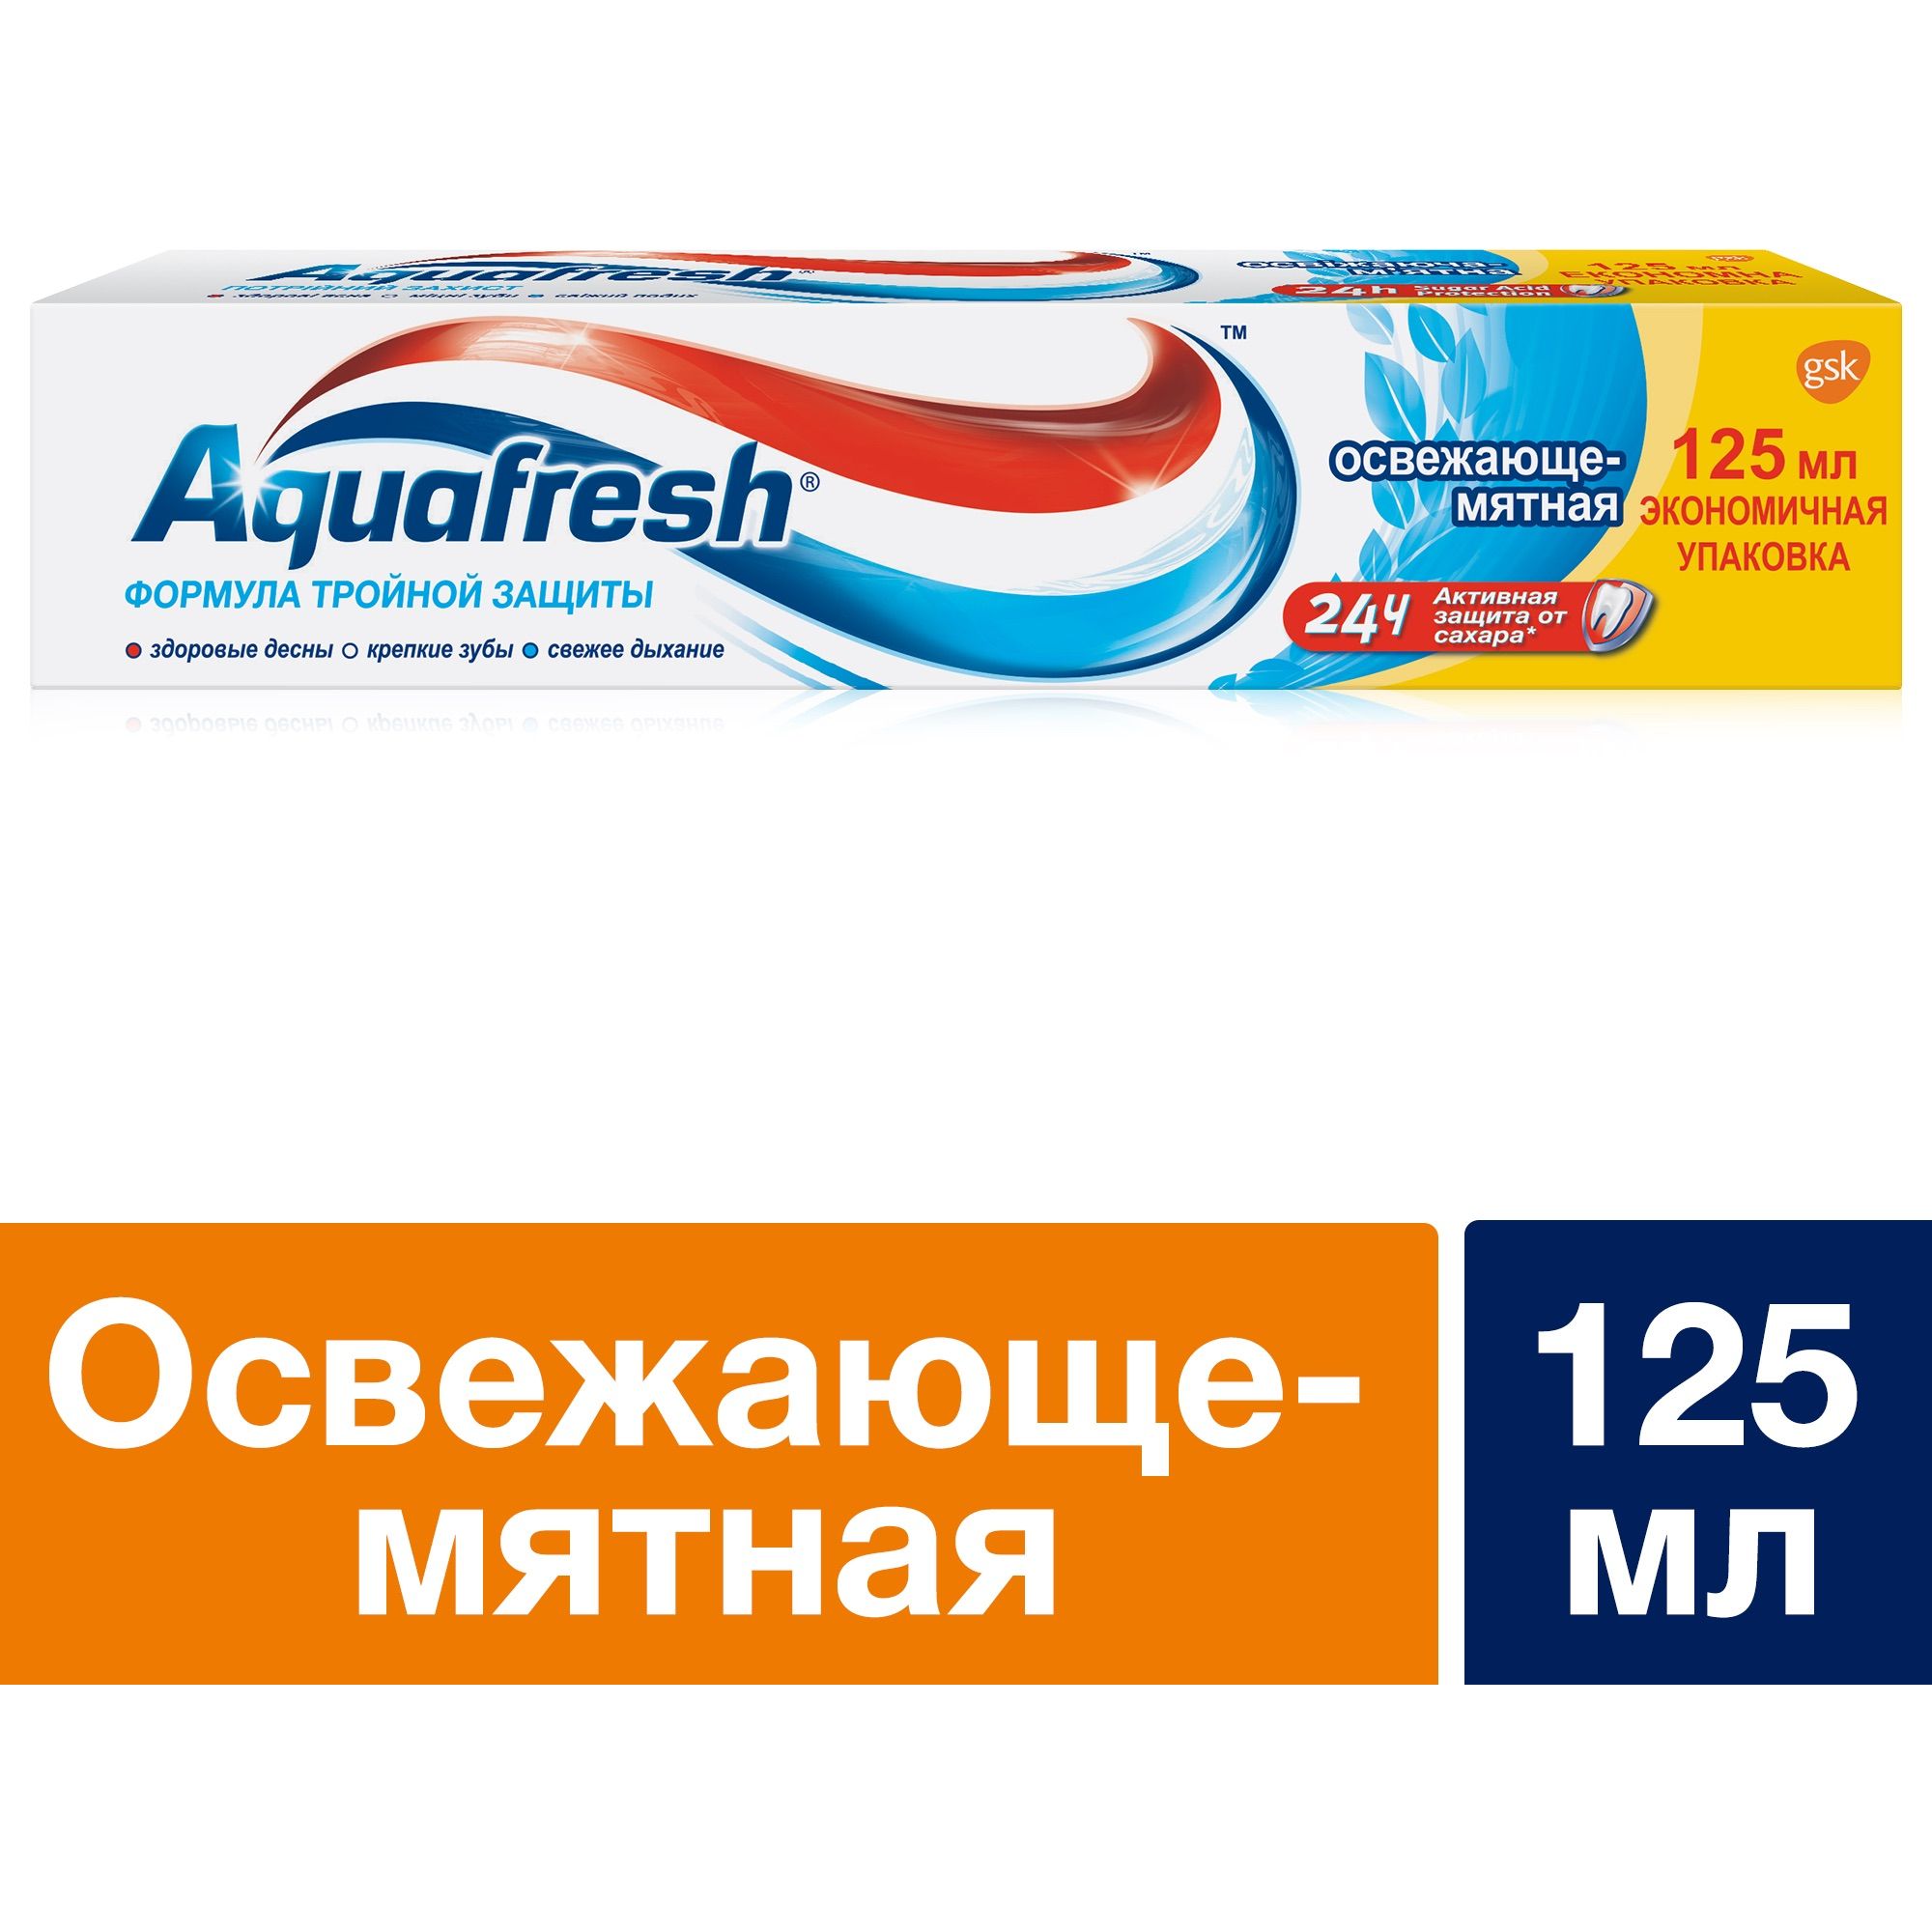 Зубна паста Aquafresh Освіжаюче-м'ятна потрійний захист 125 мл - фото 6